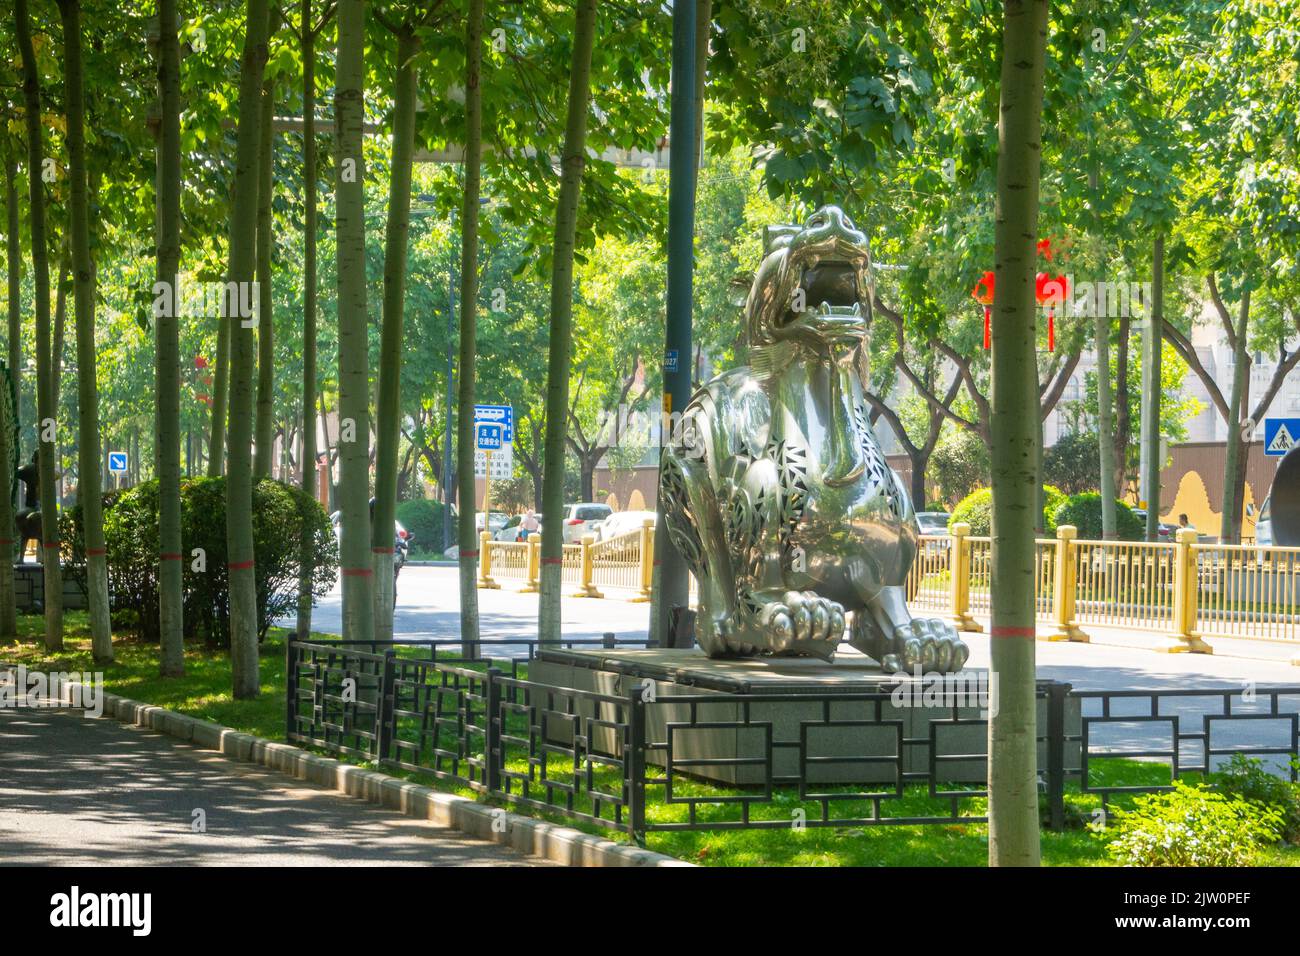 Une sculpture d'un lion d'argent décore une avenue médiane. La statue traditionnelle chinoise est entourée de magnifiques arbres. Banque D'Images